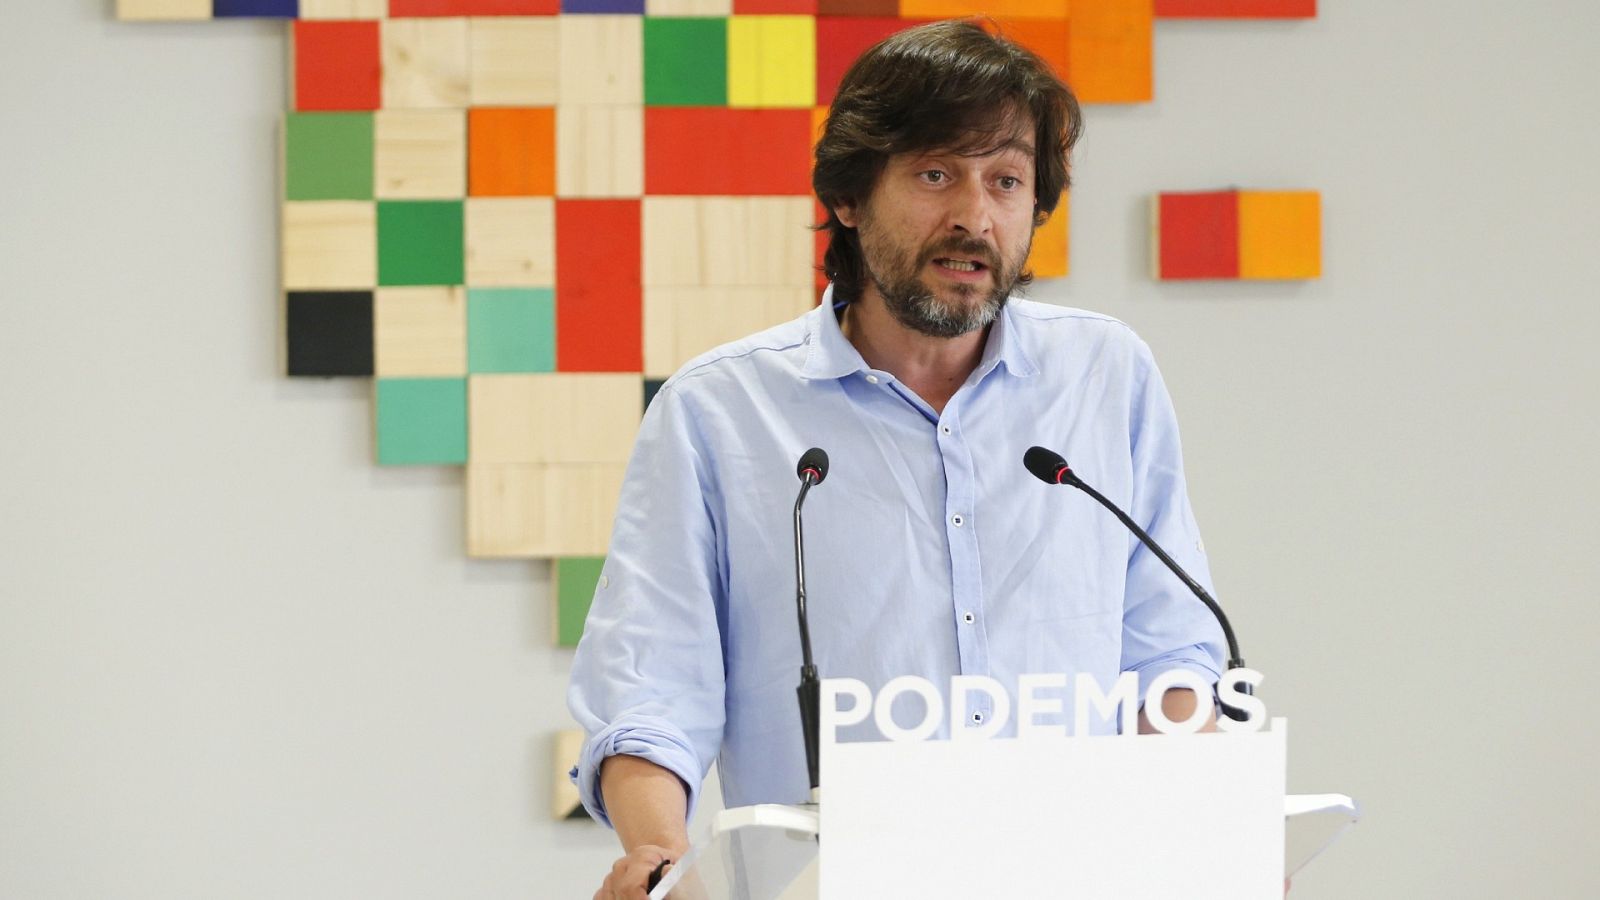 Salario mínimo: Mayoral insta al PSOE a "repasar el acuerdo" de coalición